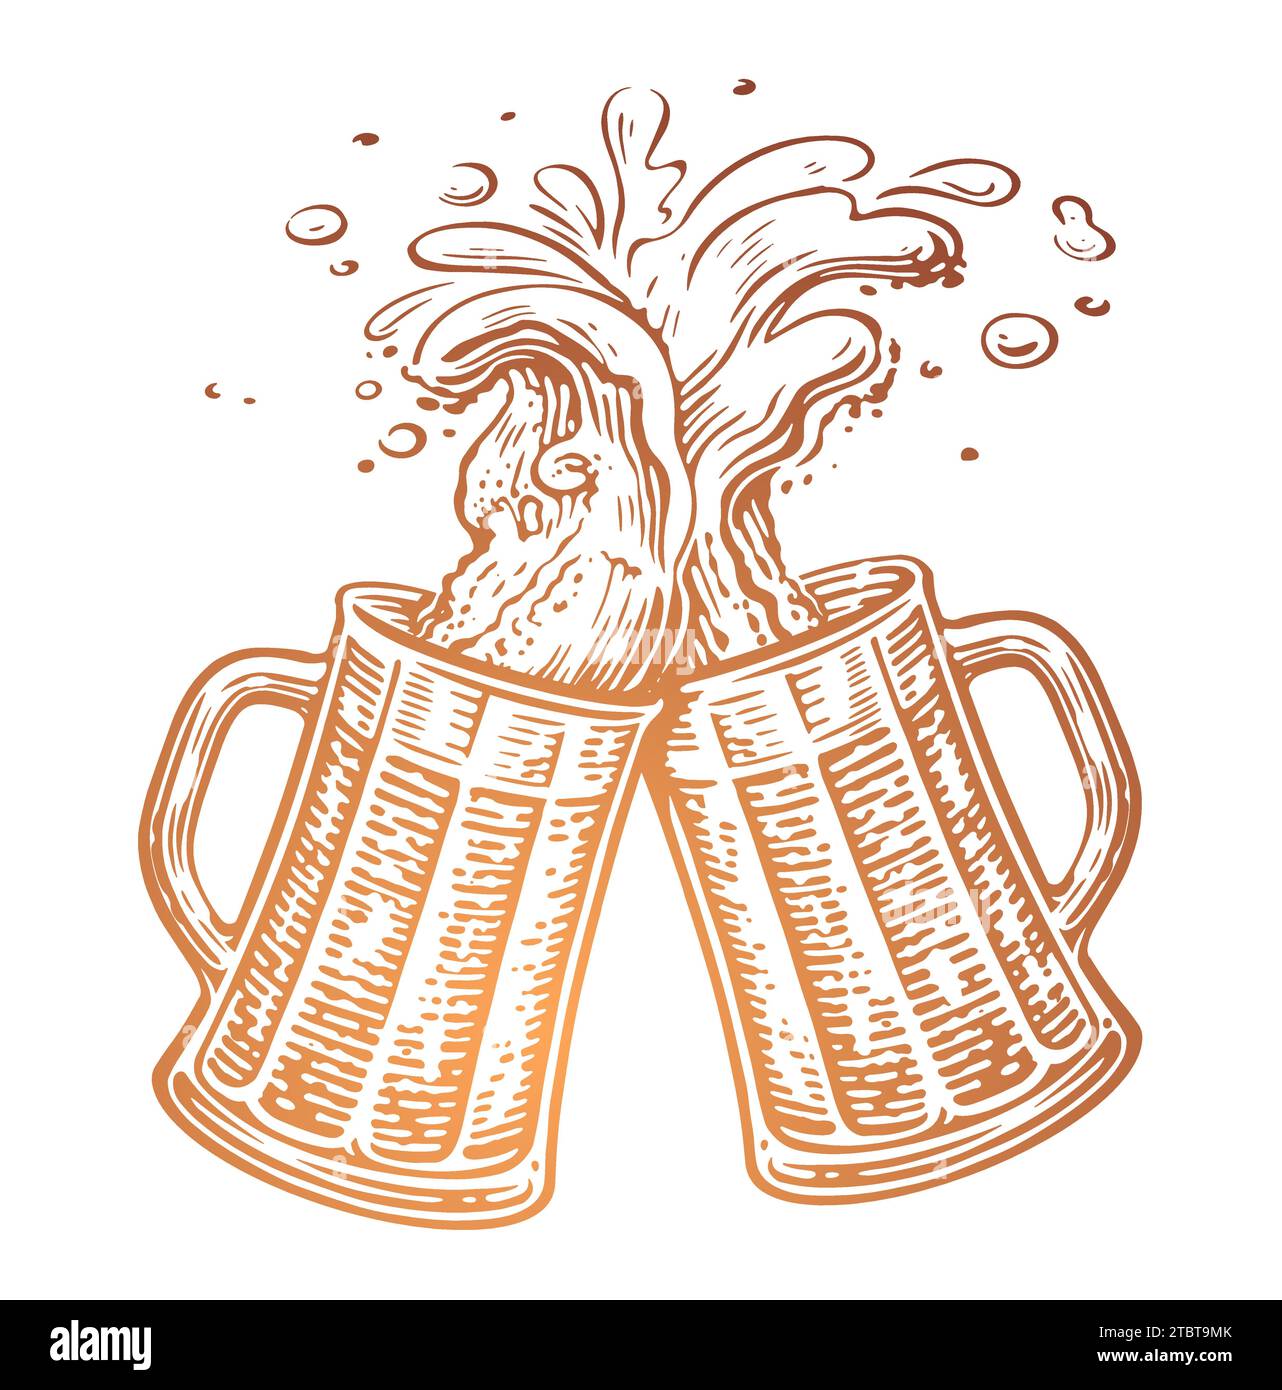 Von Hand gezeichnet zwei Bierbecher zum Toasten, Cheers. Klirrende Glasbecher. Oktoberfest, Vektorillustration Stock Vektor